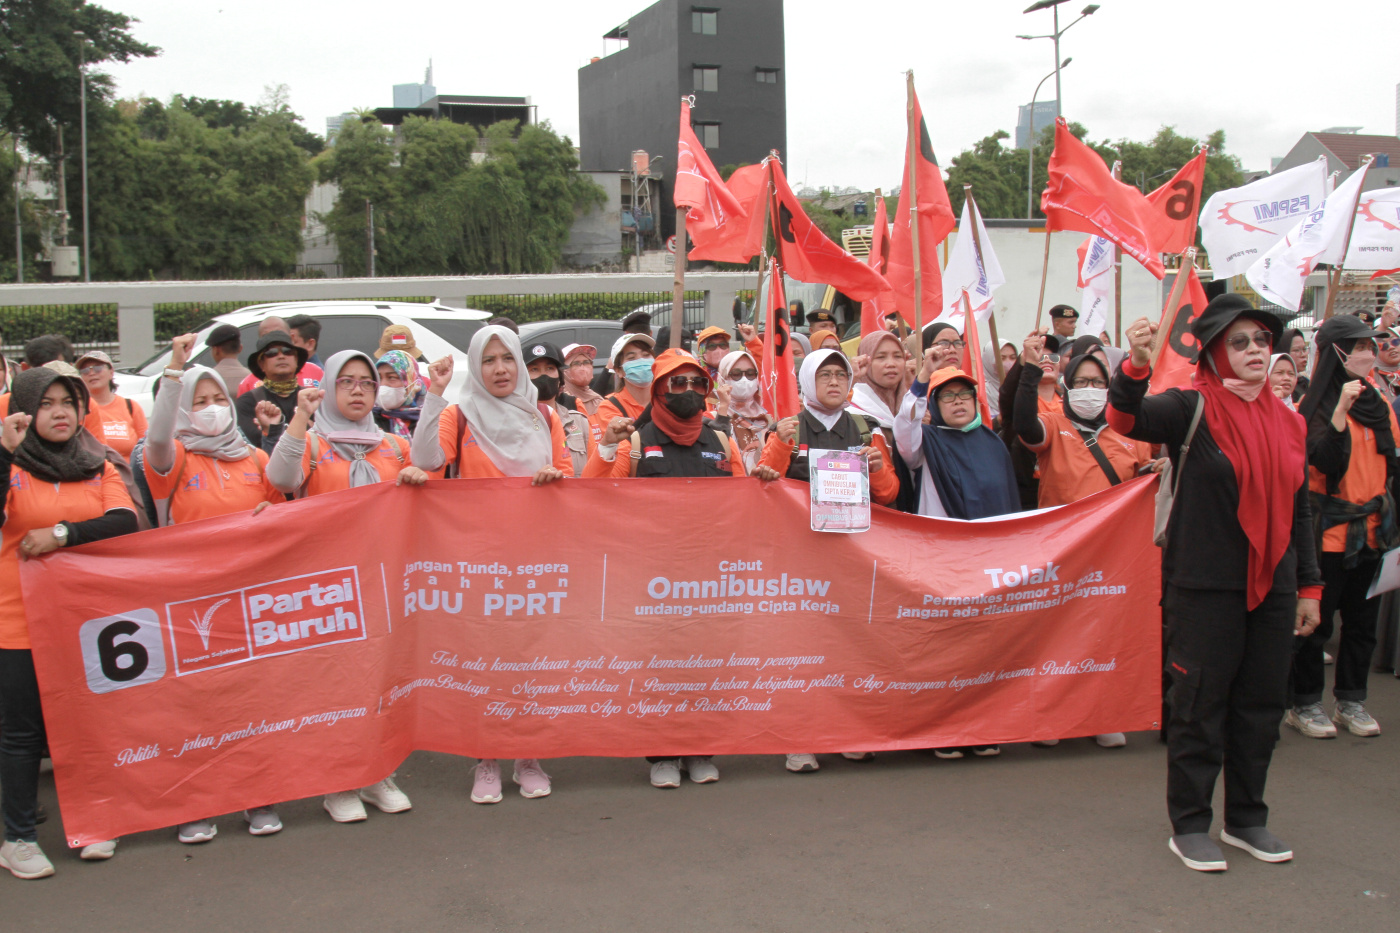 Ratusan buruh perempuan dari Partai Buruh dan serikat buruh FSPMI gelar aksi demo di DPR (Ashar/SinPo.id)